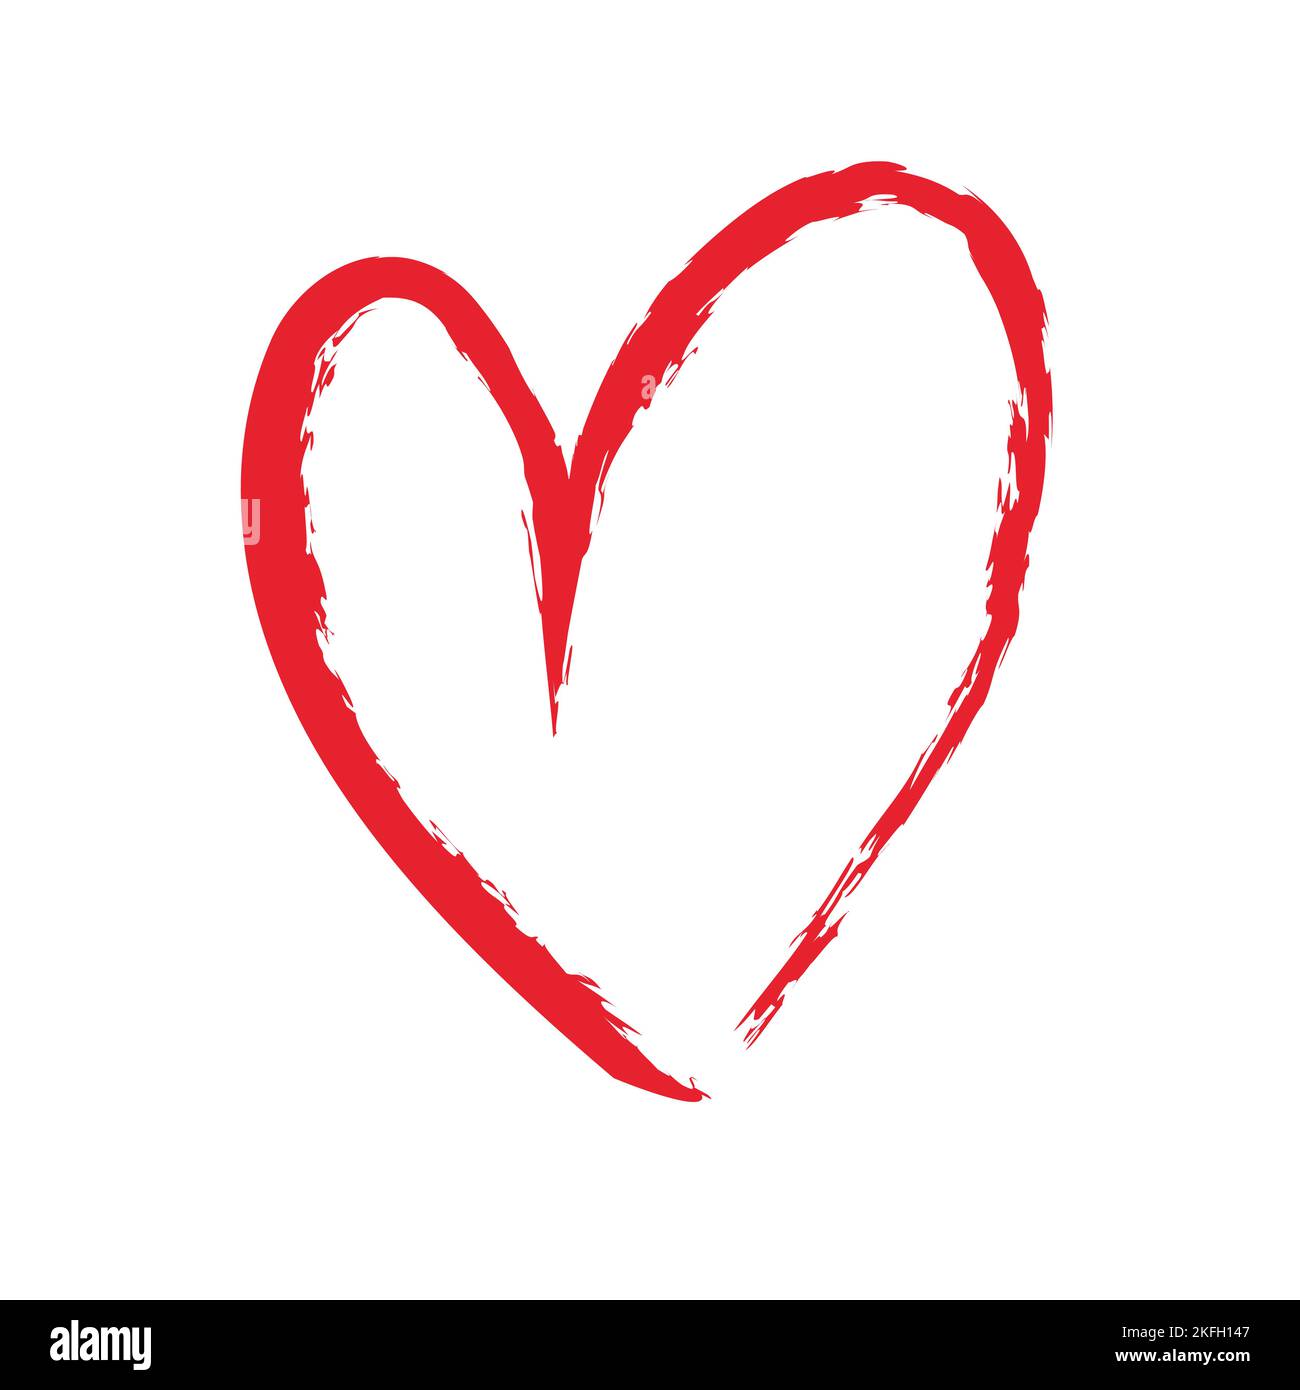 Forma del corazón. Estilo de pincelada de corazón original. Ilustración dibujada a mano del símbolo del corazón vectorial. Ilustración del Vector